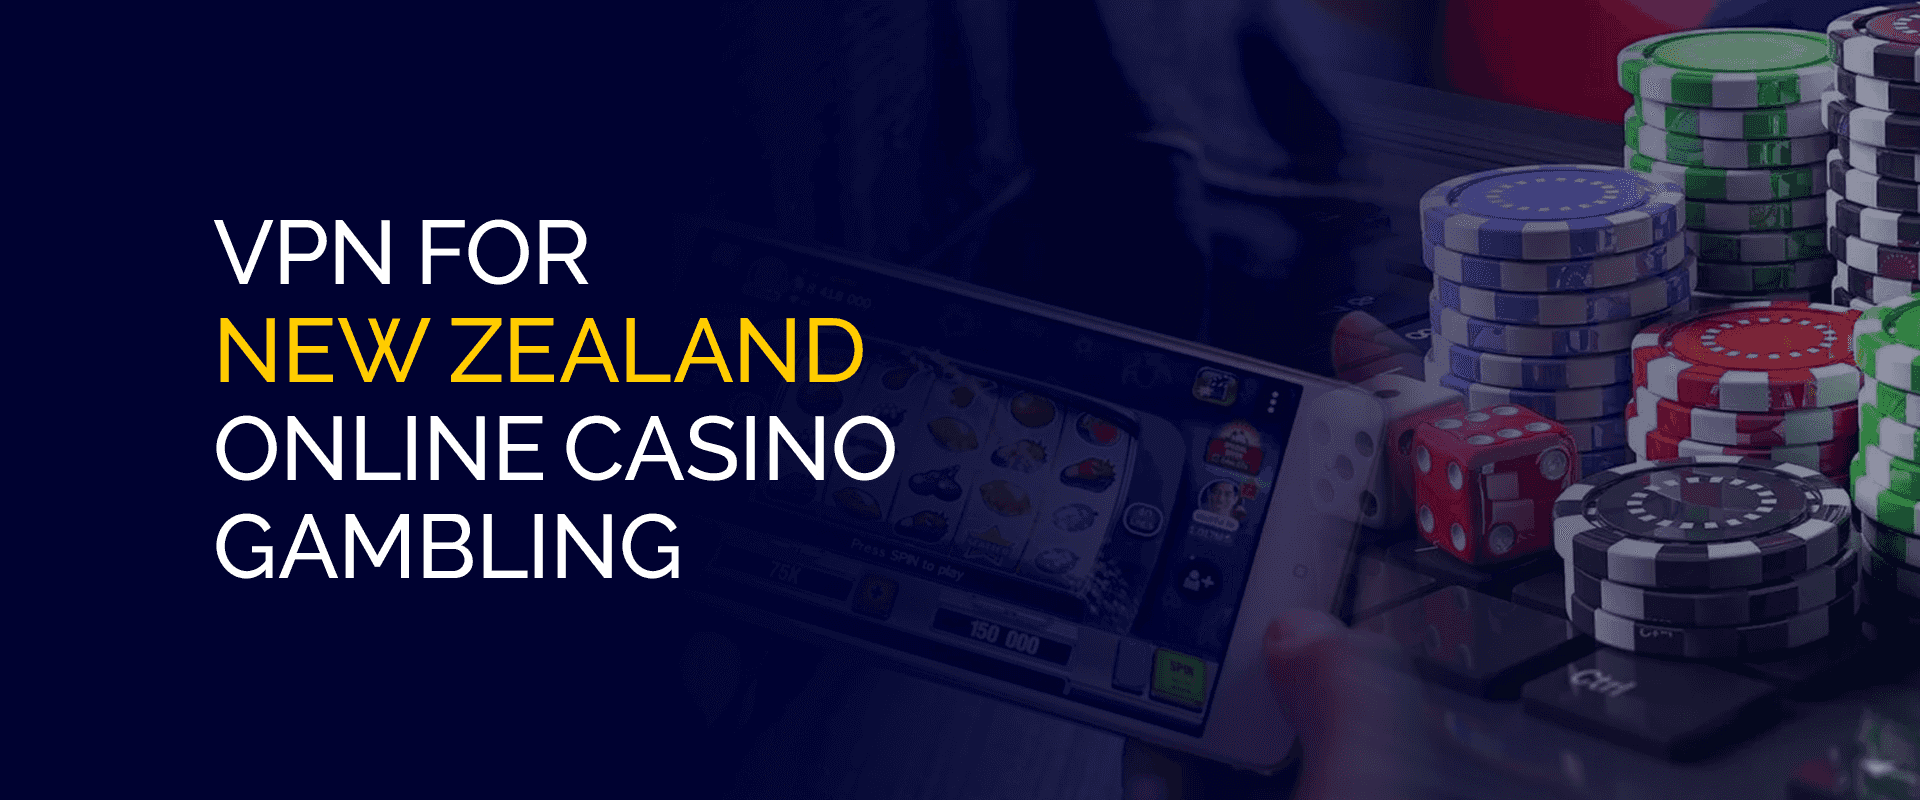 ニュージーランドのオンライン カジノ ギャンブル用 VPN